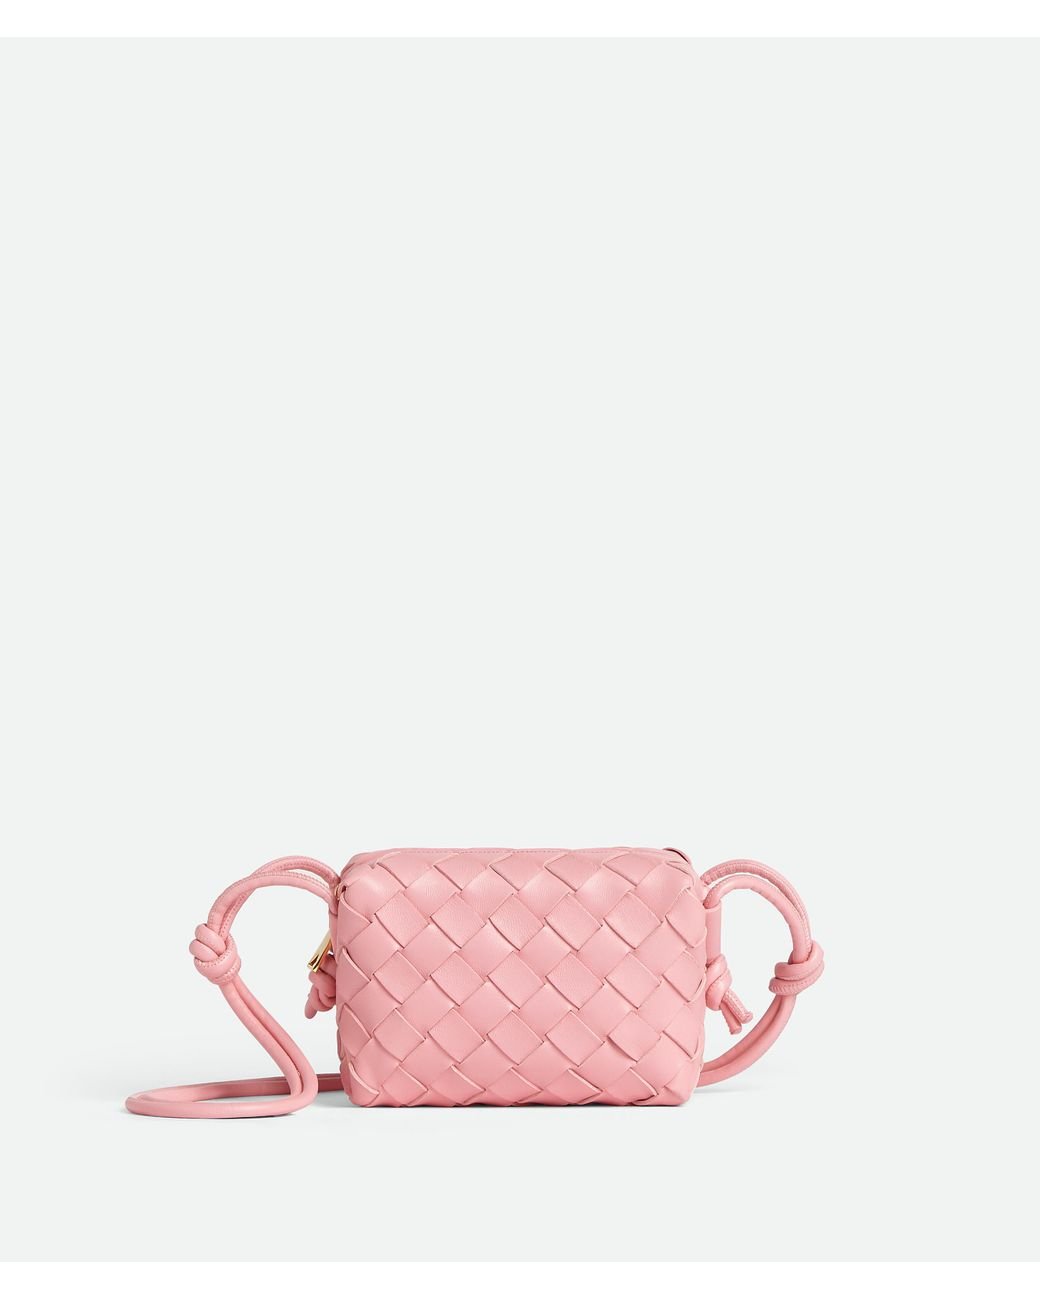 Bottega Veneta Candy Loop Camera Bag in Pink